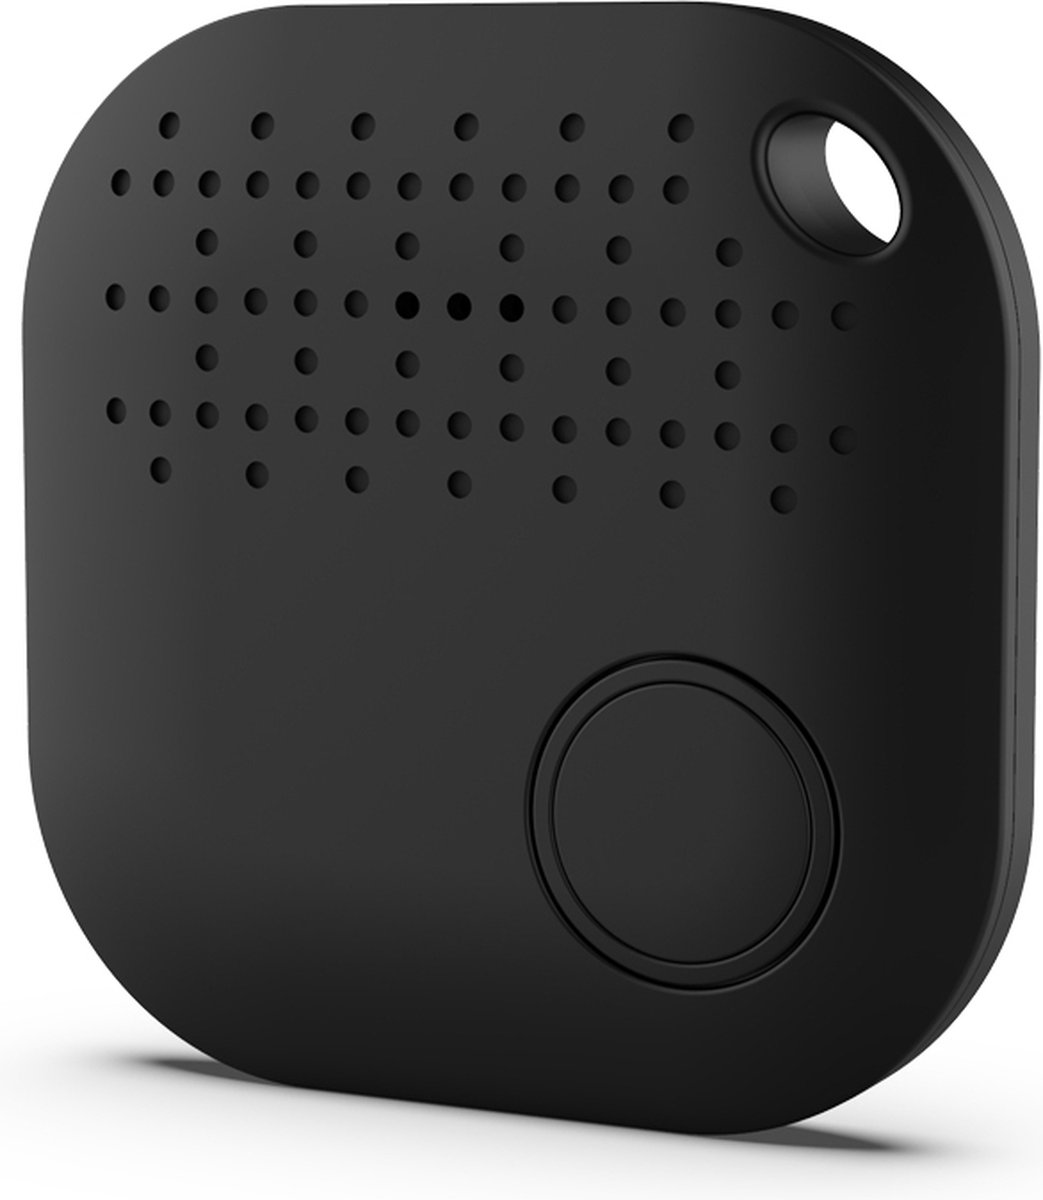 WVspecials Dernier modèle iTrack 2© noir - Smart Keyfinder 2023 - Traceur  GPS 